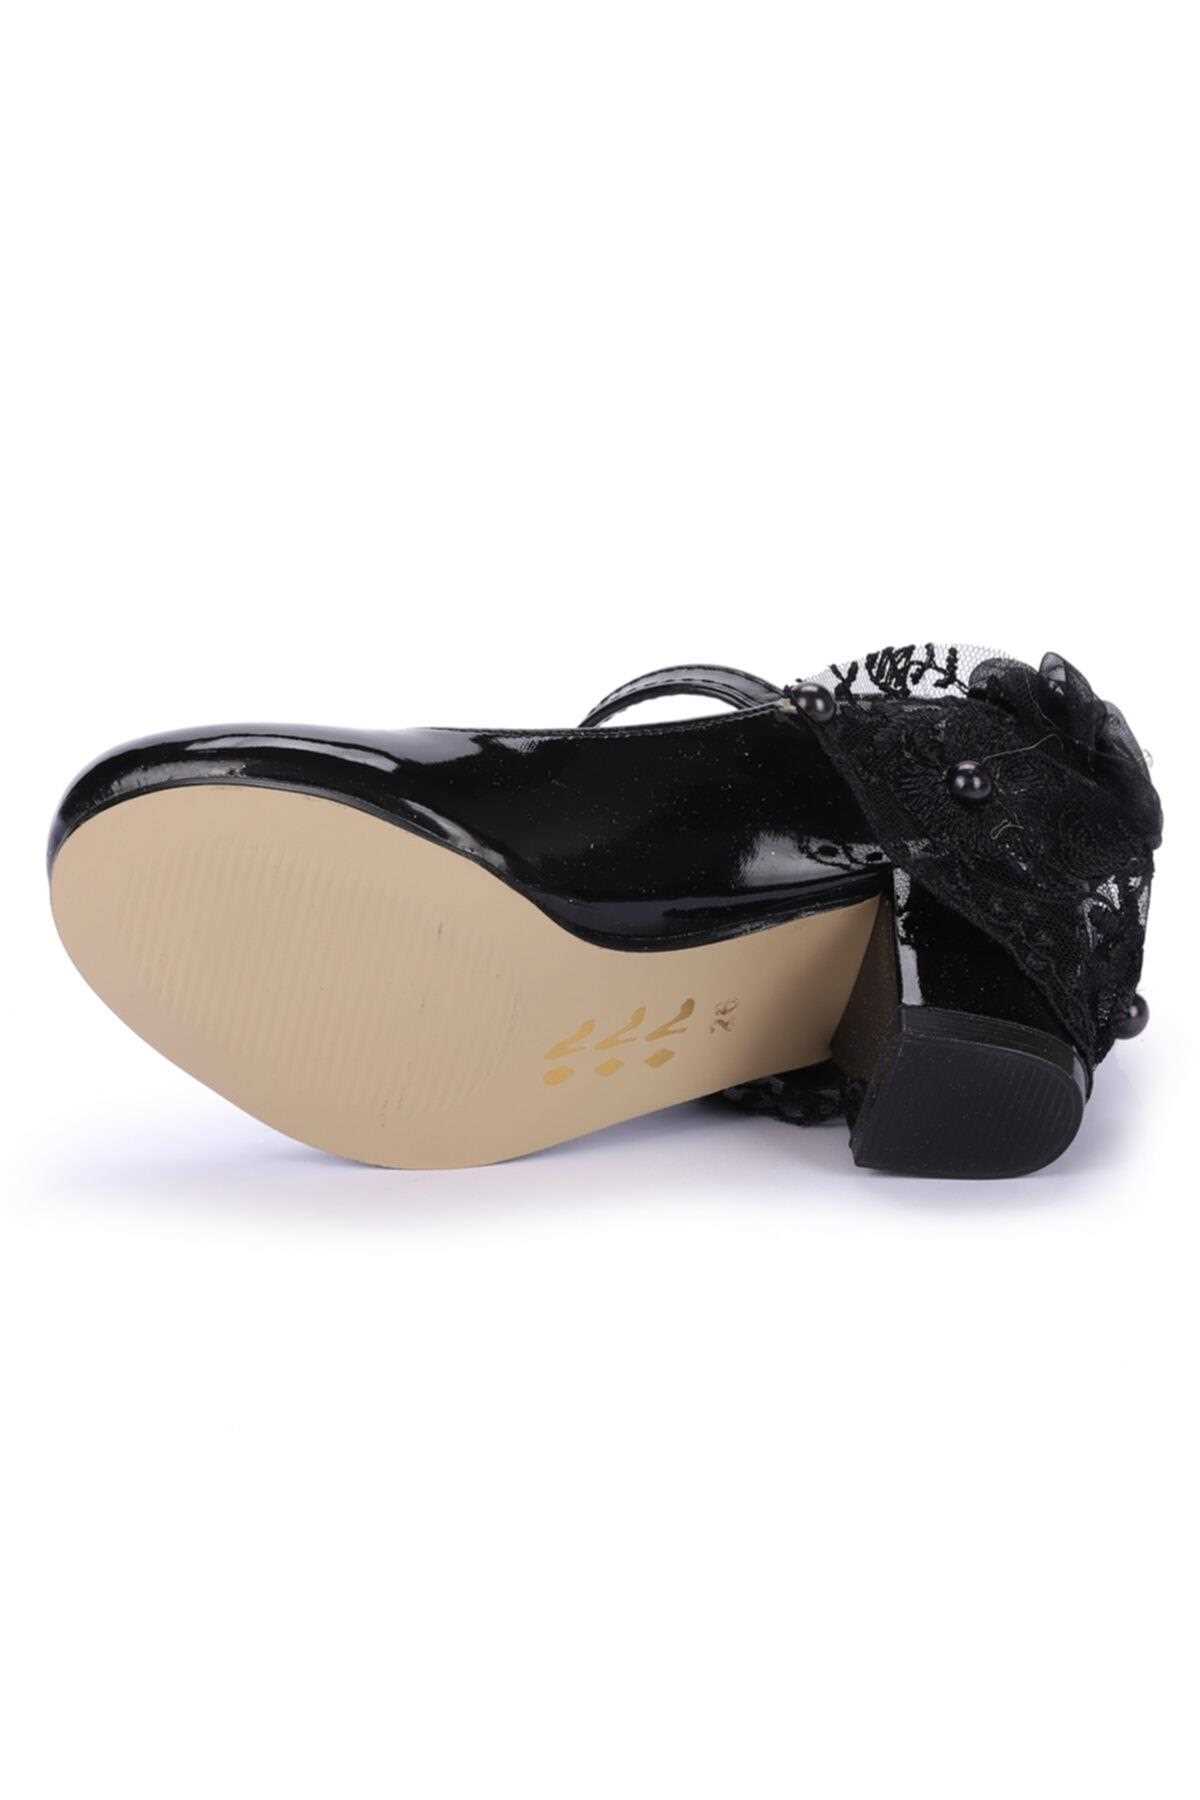 فروش  کفش پاشنه بلند بچه گانه دخترانه شیک جدید برند Aykatrend رنگ مشکی کد ty93011019